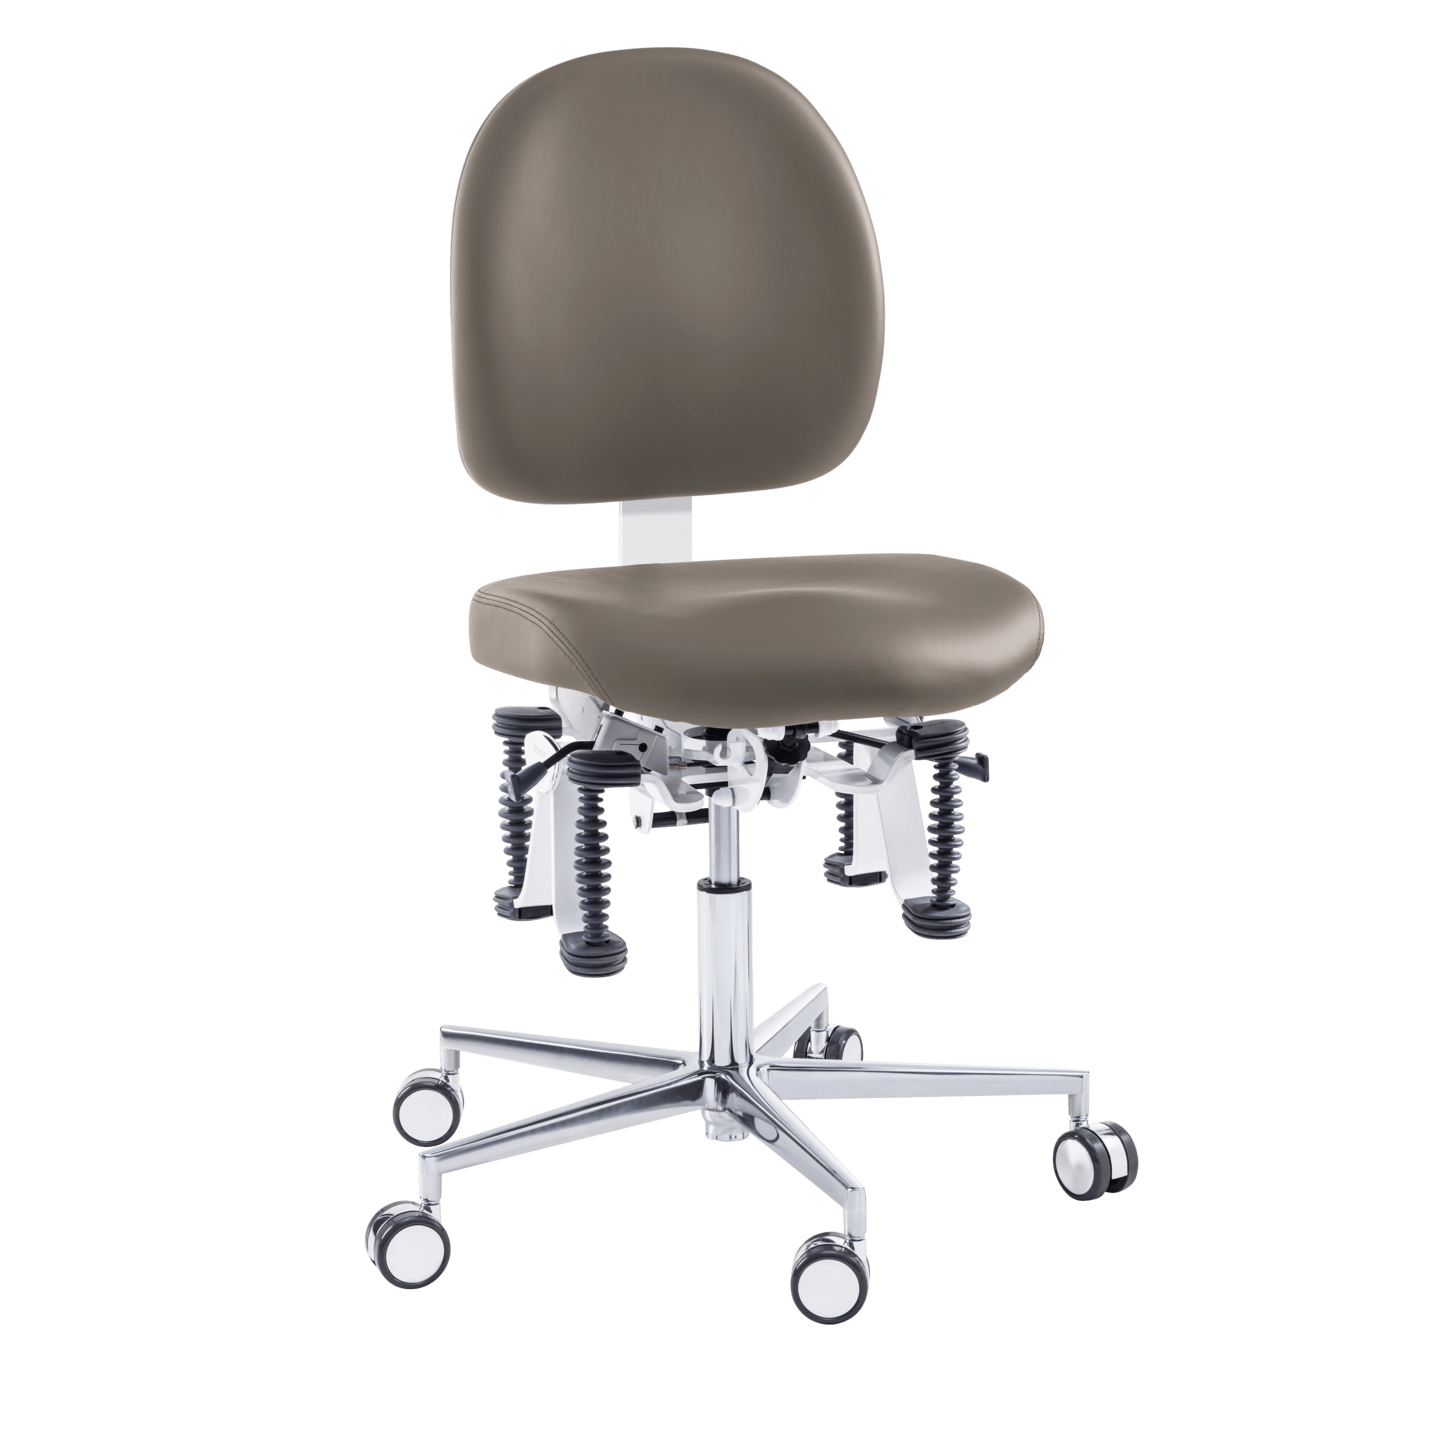 Bioswing - Bioswing Practitioner Chair in mocha